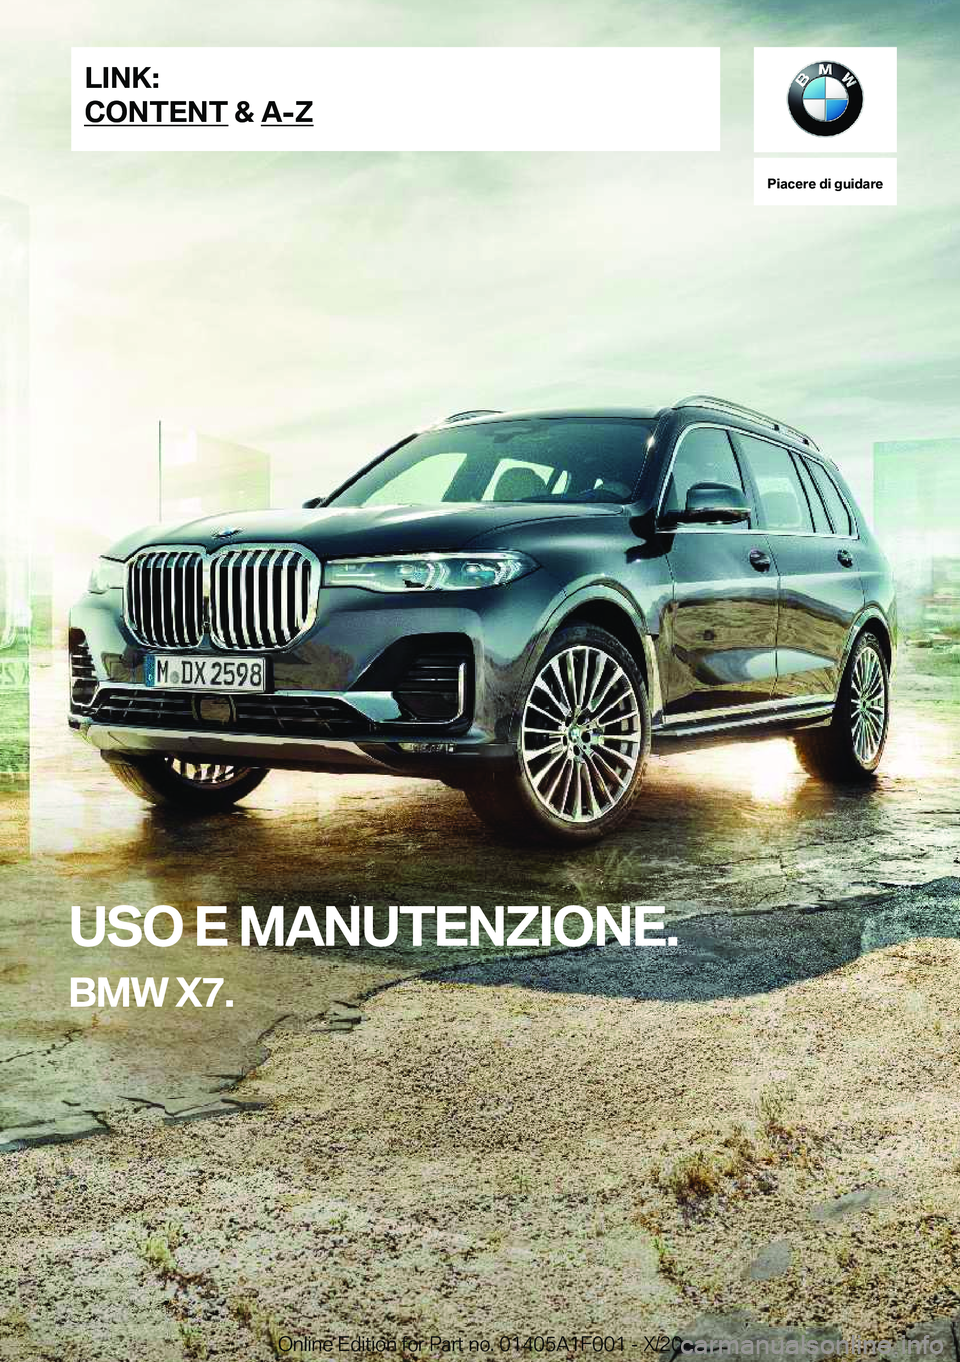 BMW X7 2021  Libretti Di Uso E manutenzione (in Italian) �P�i�a�c�e�r�e��d�i��g�u�i�d�a�r�e
�U�S�O��E��M�A�N�U�T�E�N�Z�I�O�N�E�.
�B�M�W��X�7�.�L�I�N�K�:
�C�O�N�T�E�N�T��&��A�-�Z�O�n�l�i�n�e��E�d�i�t�i�o�n��f�o�r��P�a�r�t��n�o�.��0�1�4�0�5�A�1�F�